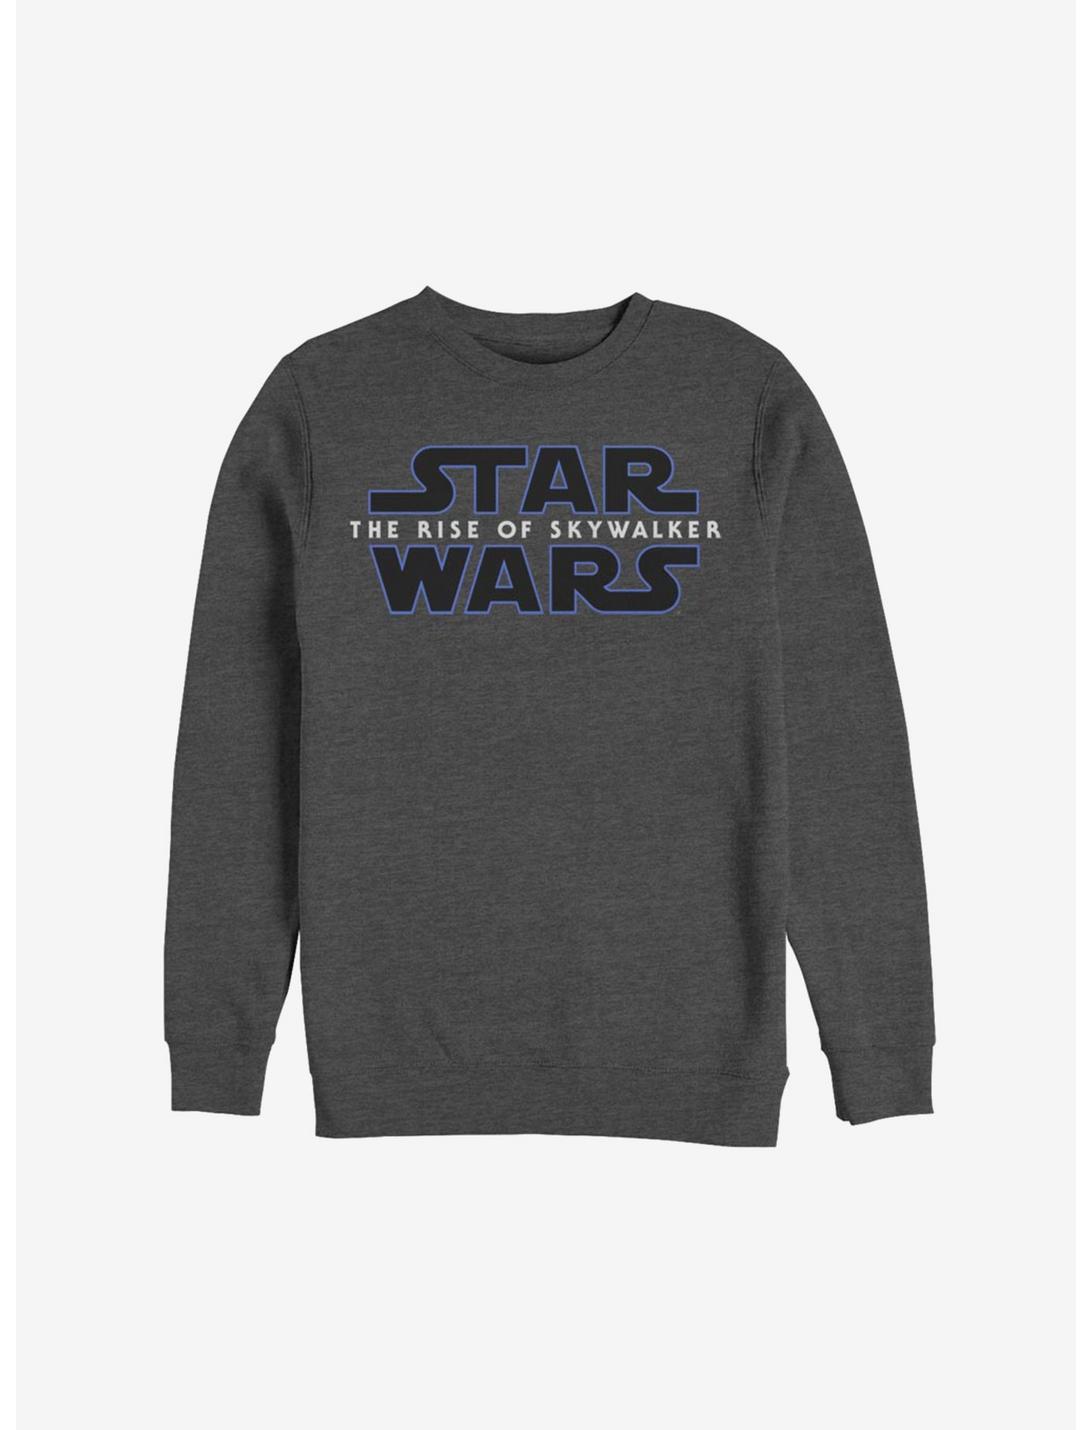 Star Wars Episode IX The Rise Of Skywalker Logo Sweatshirt, CHAR HTR, hi-res